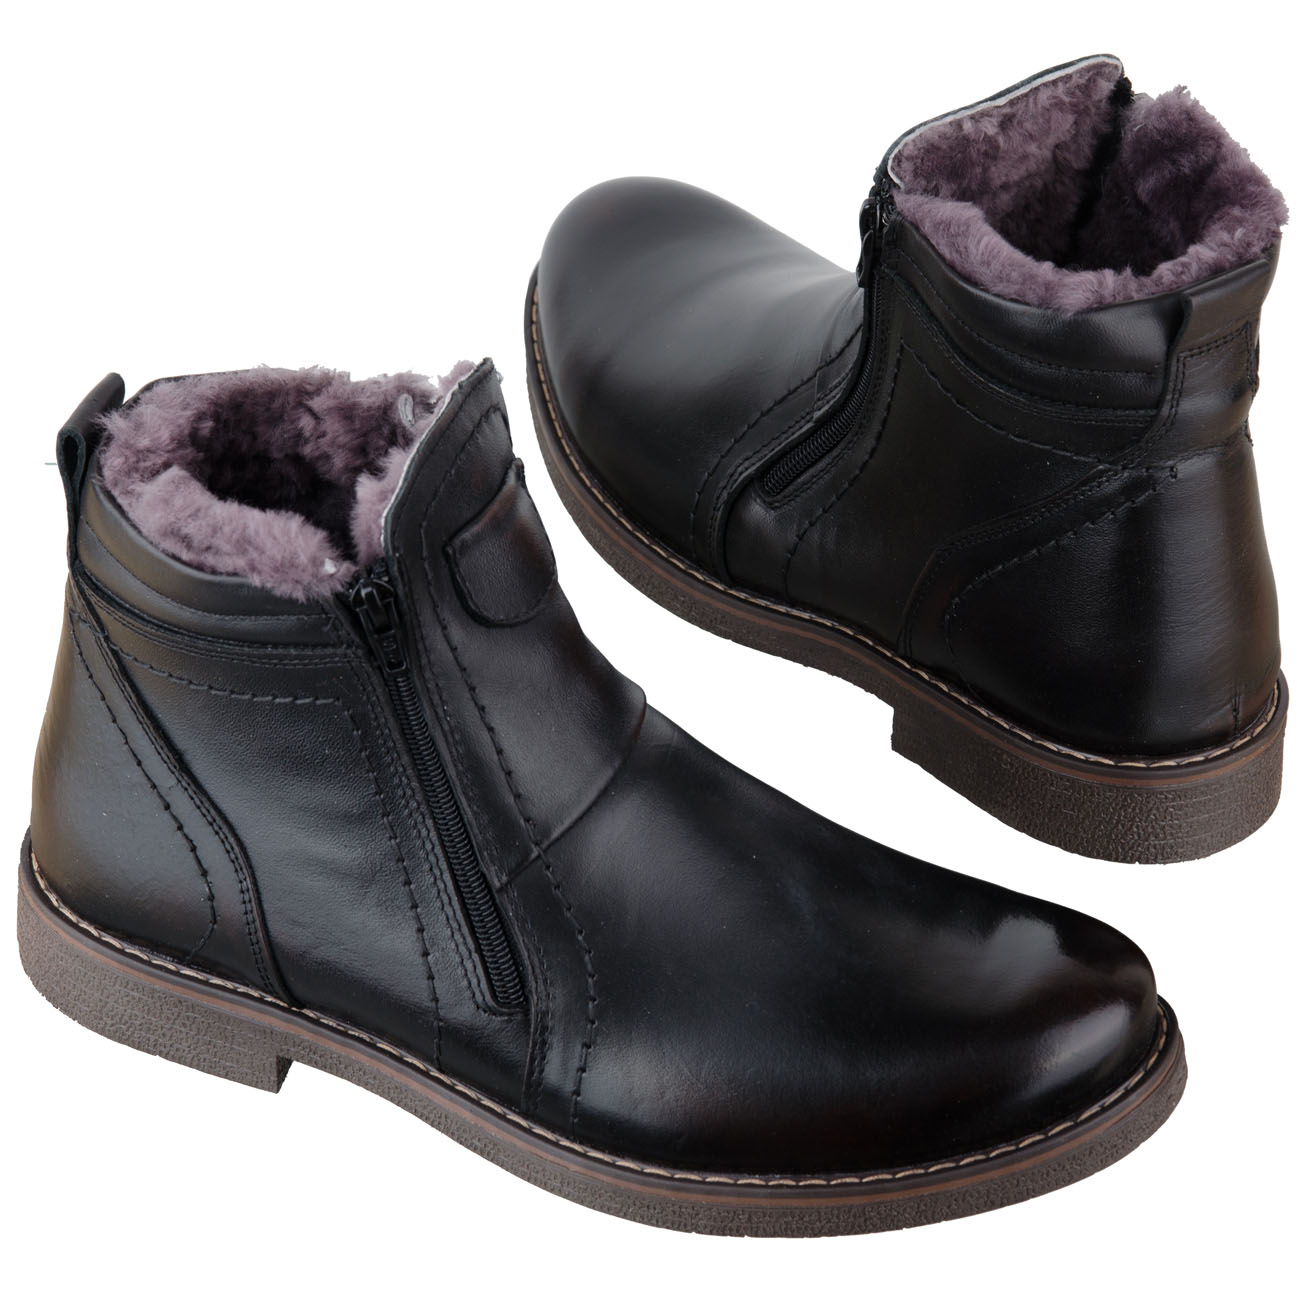 Зимние коричневые мужские ботинки из натуральной кожи на меху купить винтернет магазине Kwinto